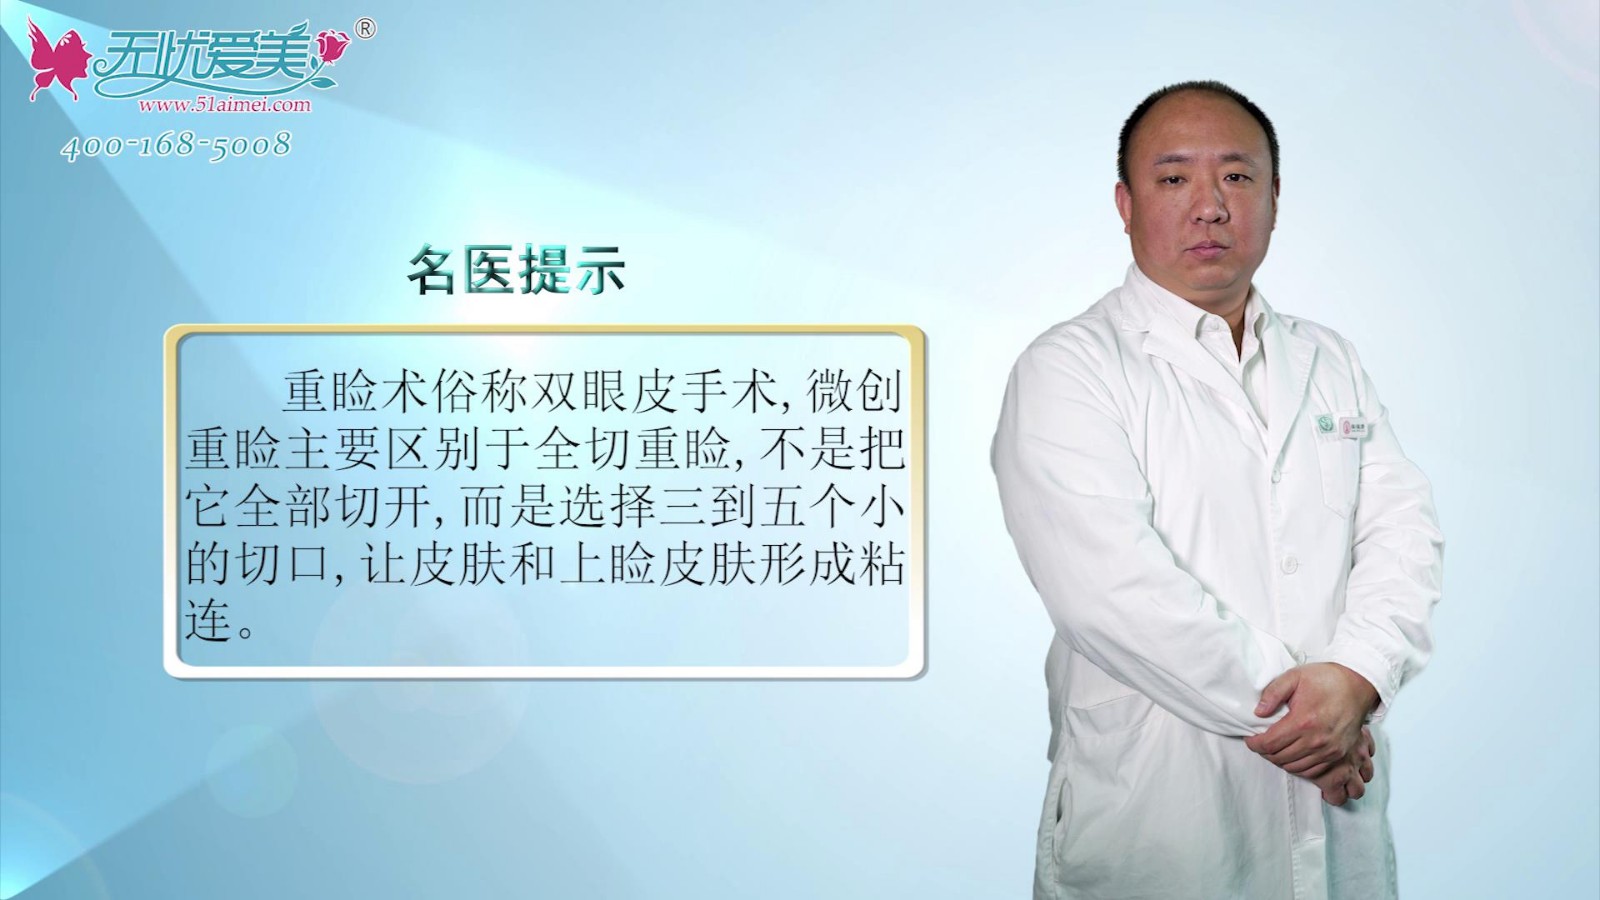 什么是重睑术?北京海医悦美马涛视频分享微创重睑怎么做